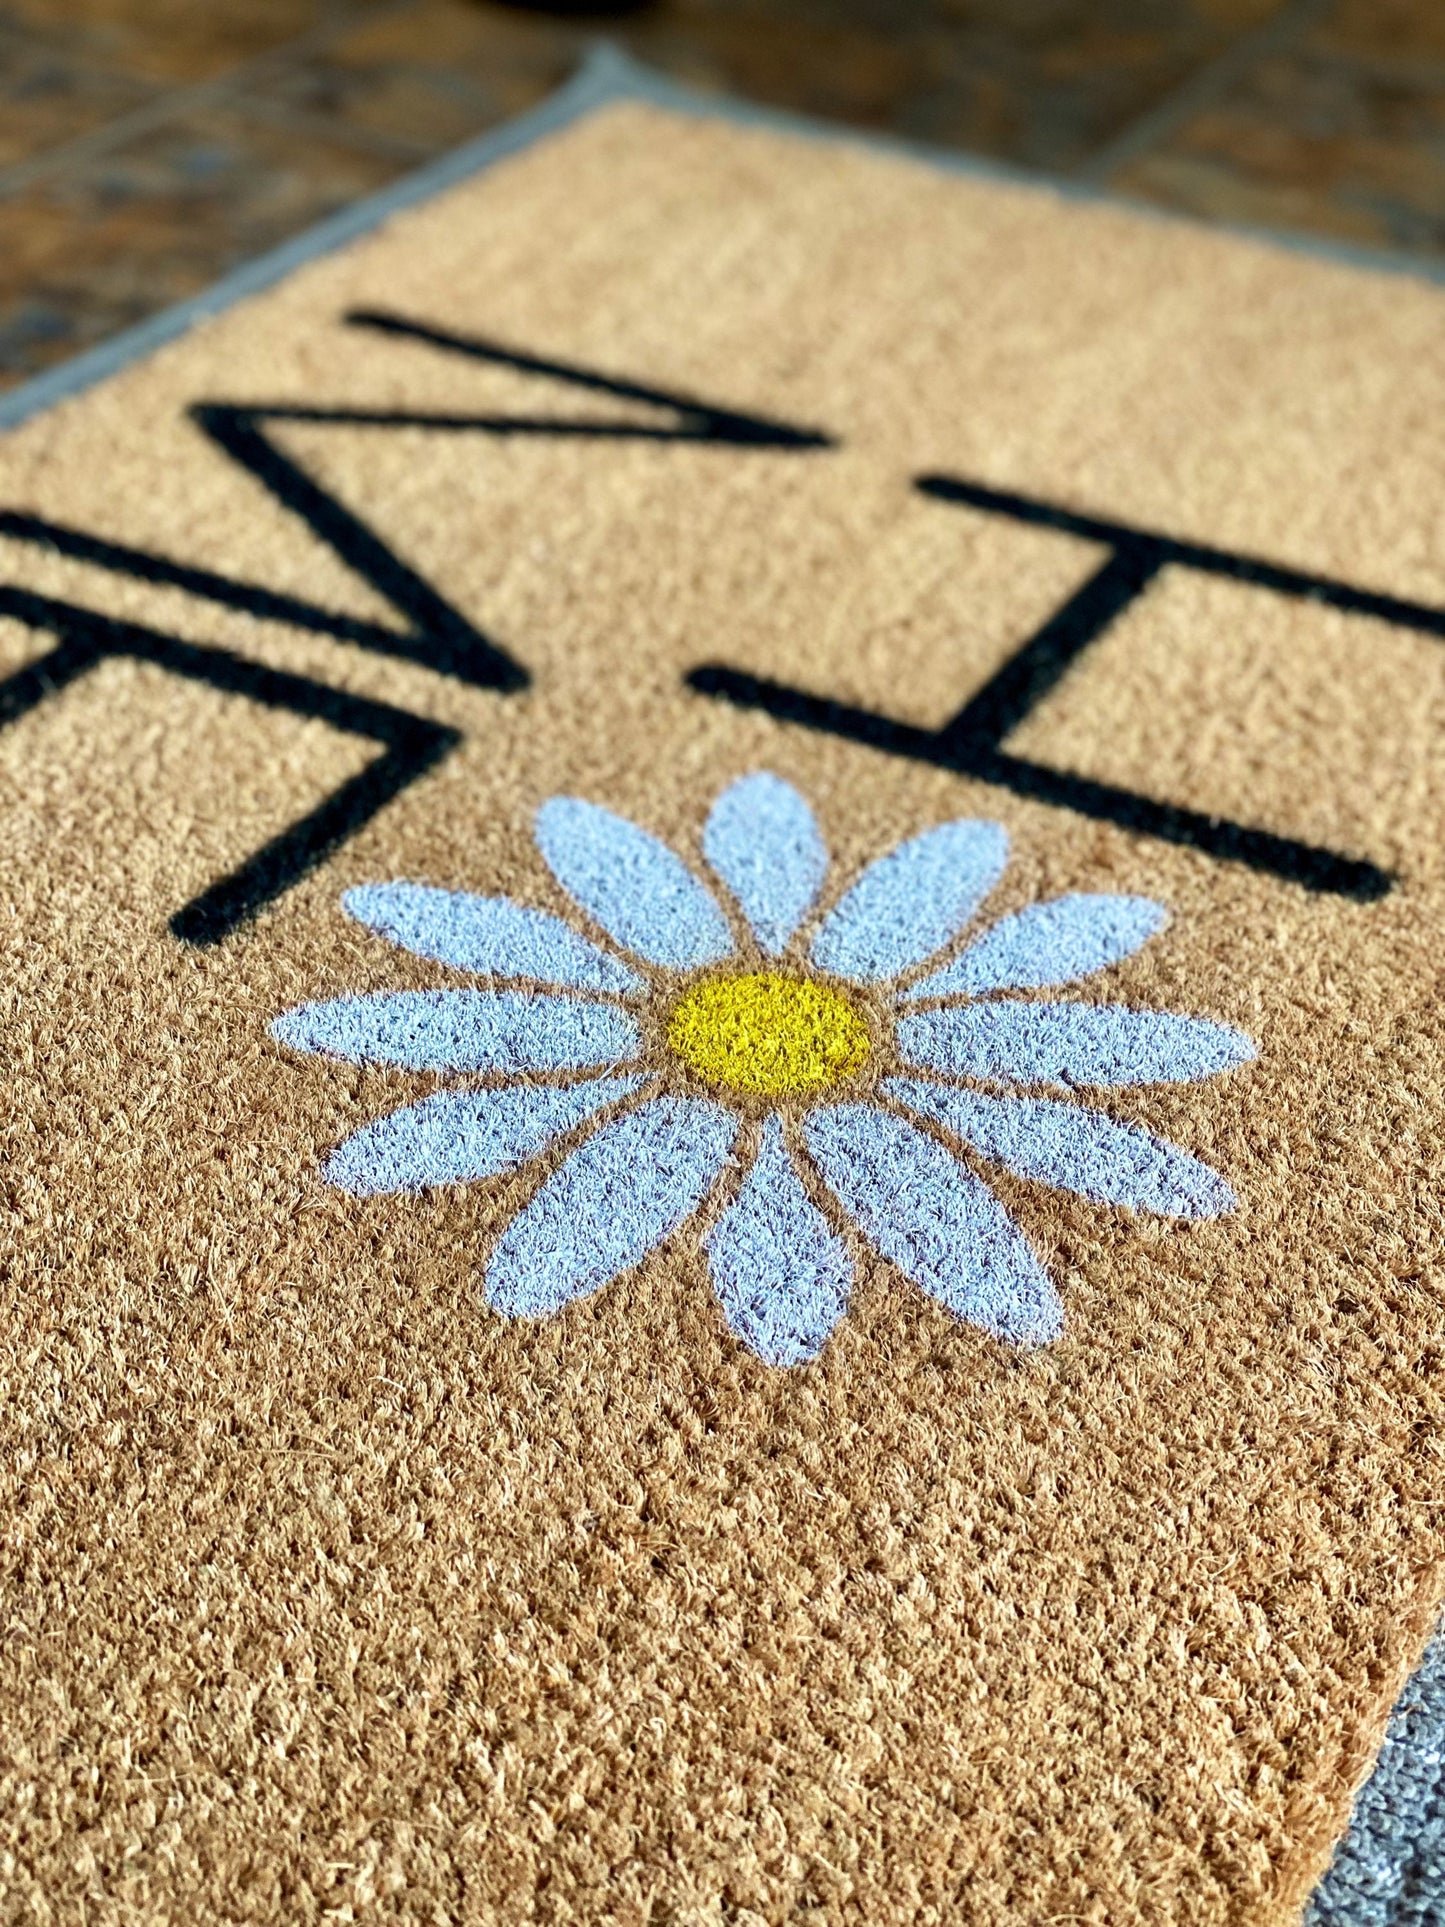 Daisy Doormat, Flower Doormat, Floral Door Mat, Spring Welcome Mats, Front  Door Decor, Spring Porch Decor, New Home Gift, Doormat Decor 